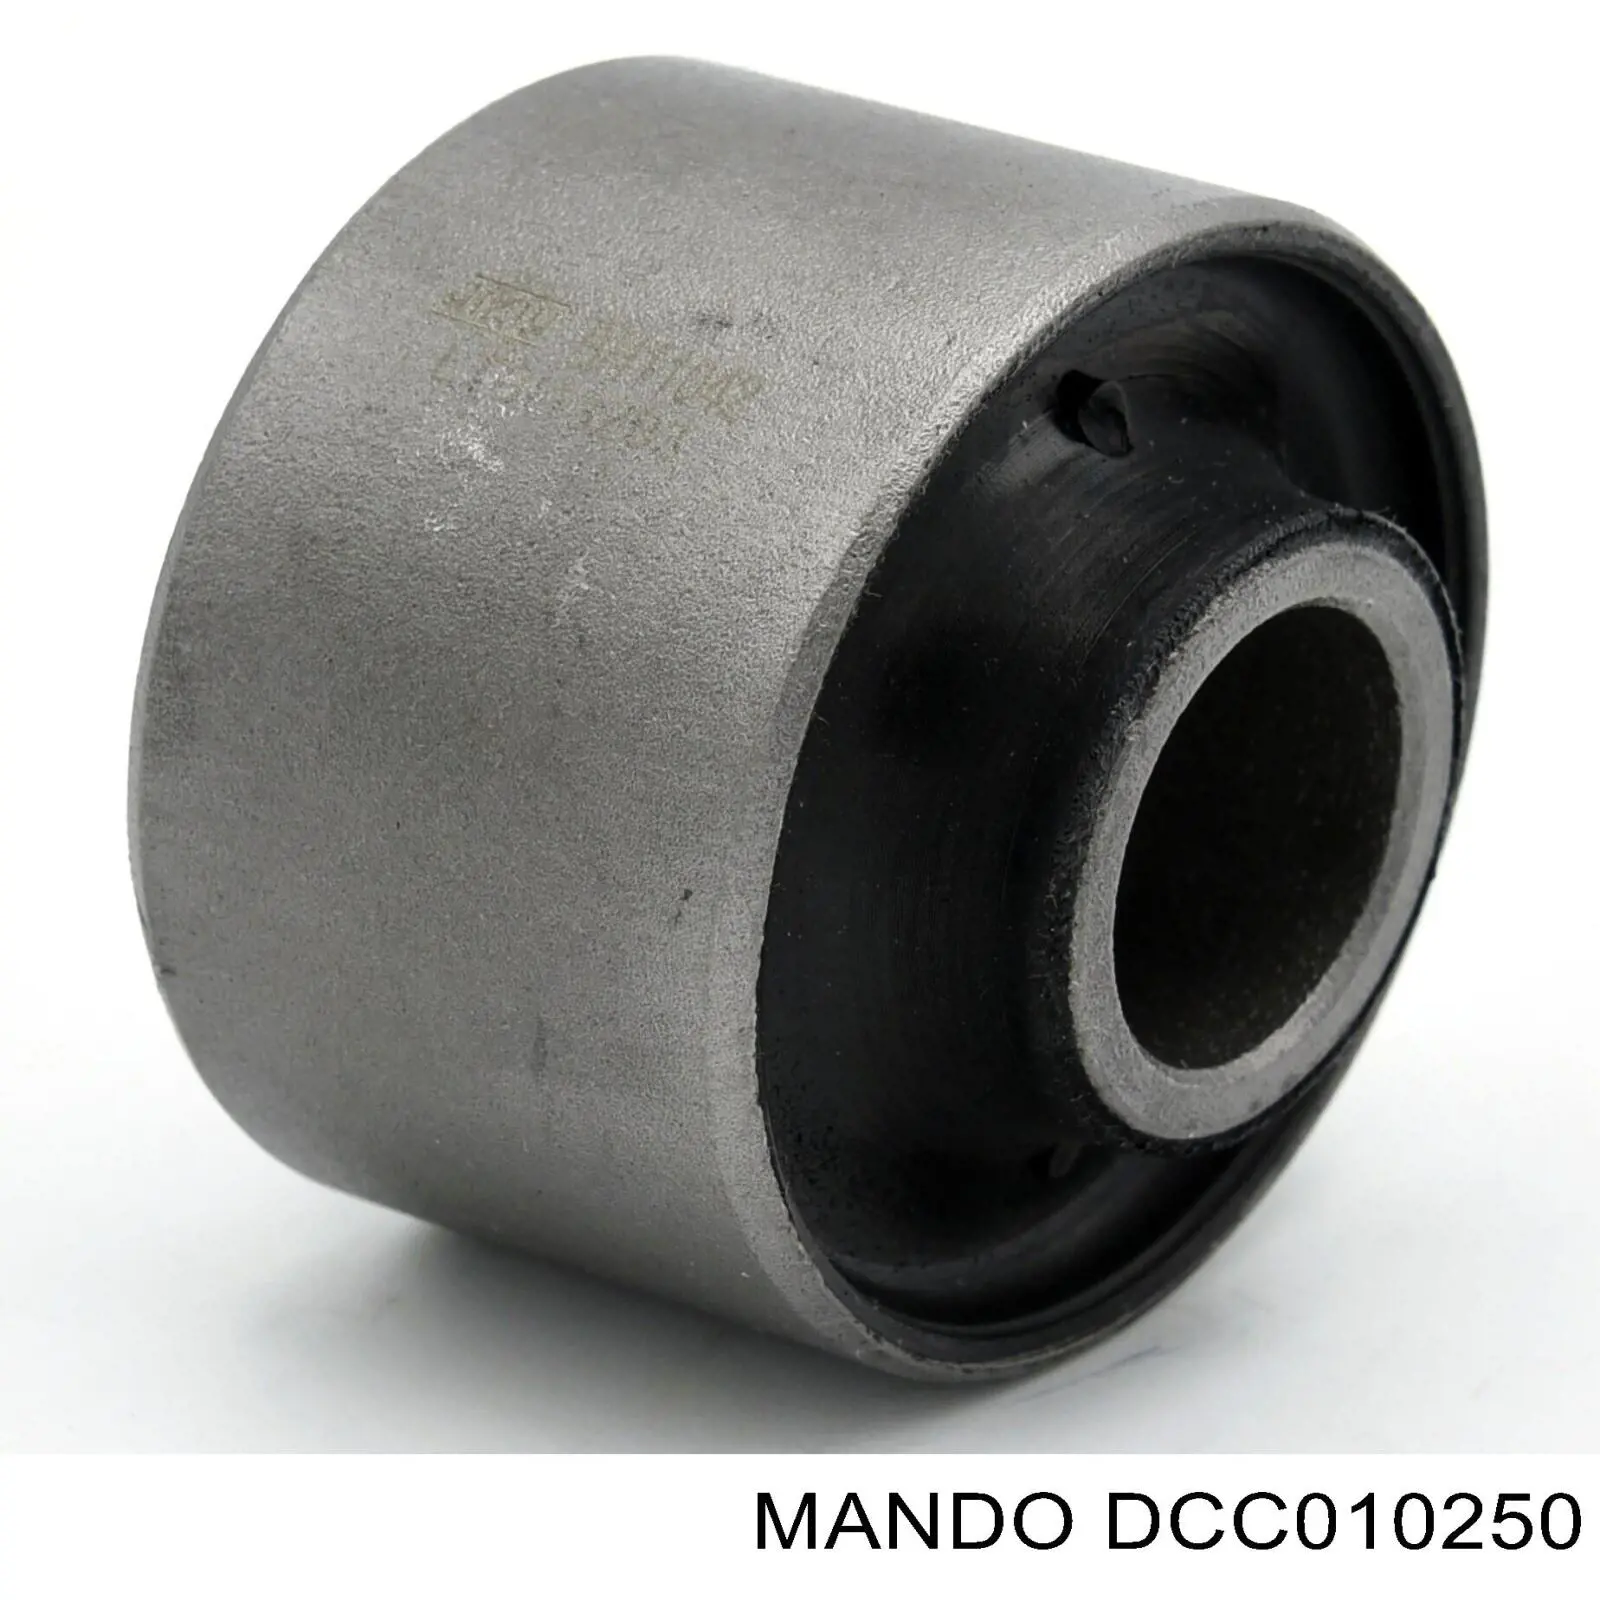 Сайлентблок заднего продольного рычага задний Mando DCC010250